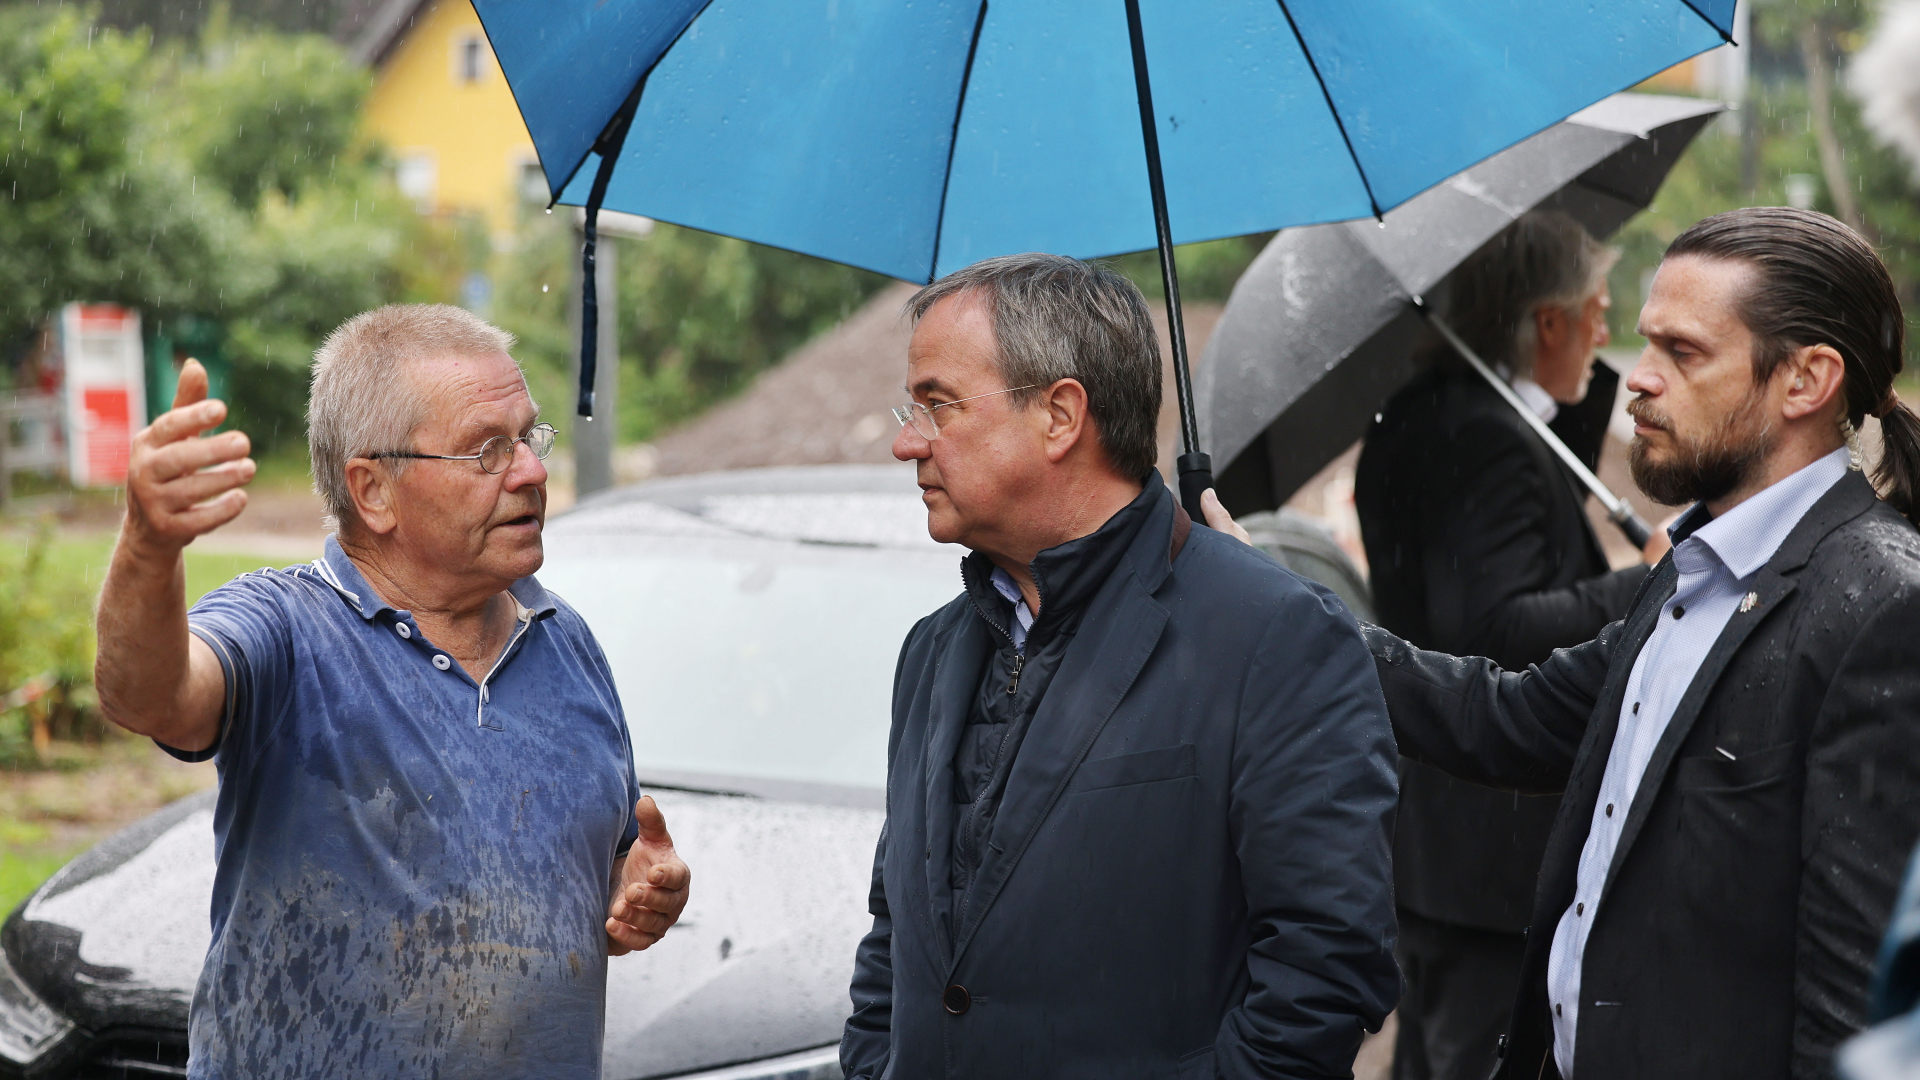 Ein Sicherheitsbeamter hält einen Regenschirm über Armin Laschet während er im Regen mit einem vom Hochwasser betroffenen Mann spricht. 